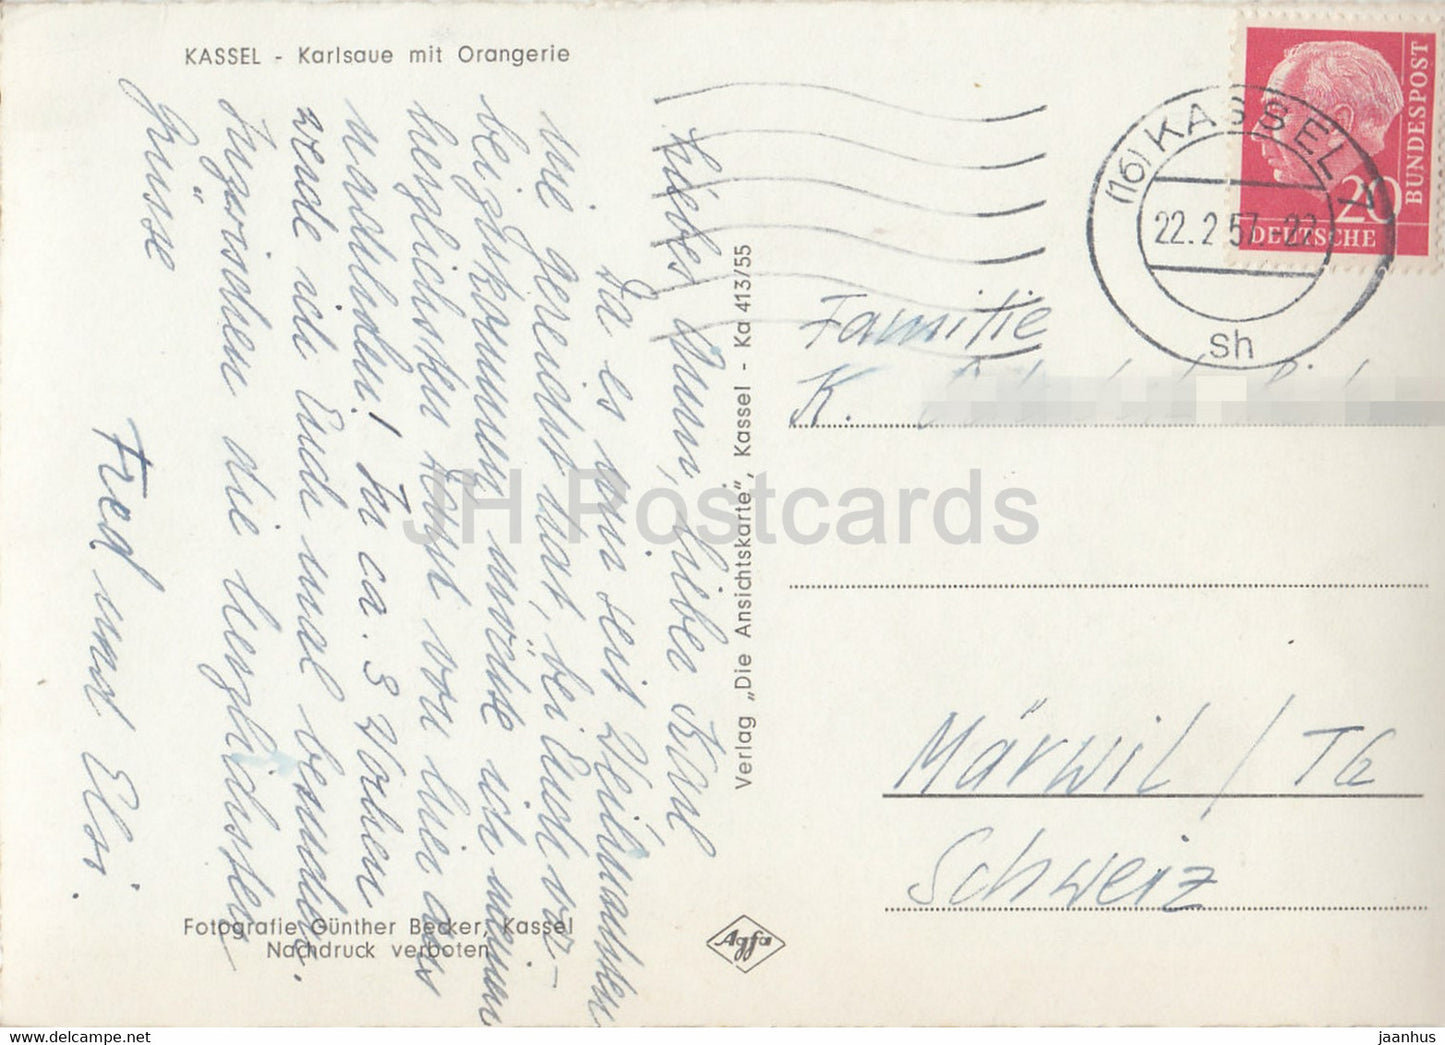 Kassel - Karlsaue mit Orangerie - alte Postkarte - 1957 - Deutschland - gebraucht